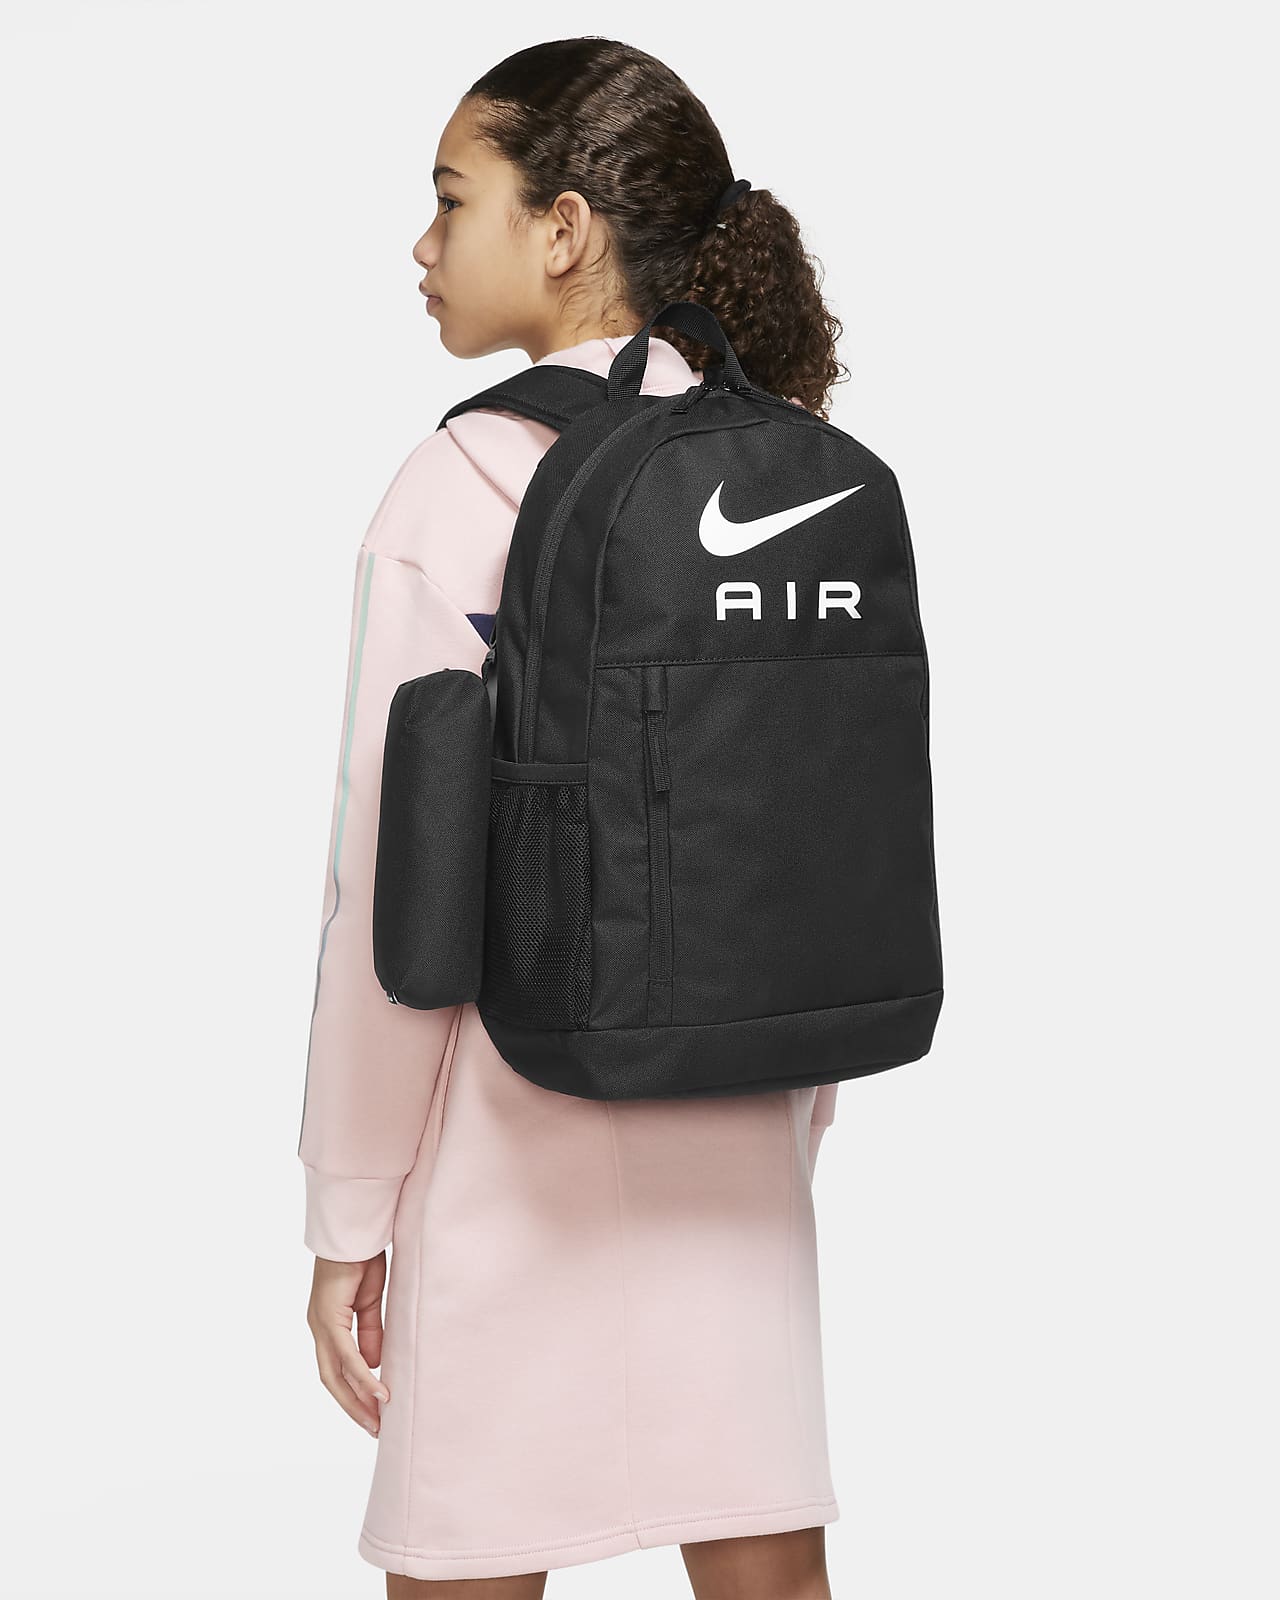 Amazon.com : Nike Vapor Select Baseball Backpack : Sports & Outdoors